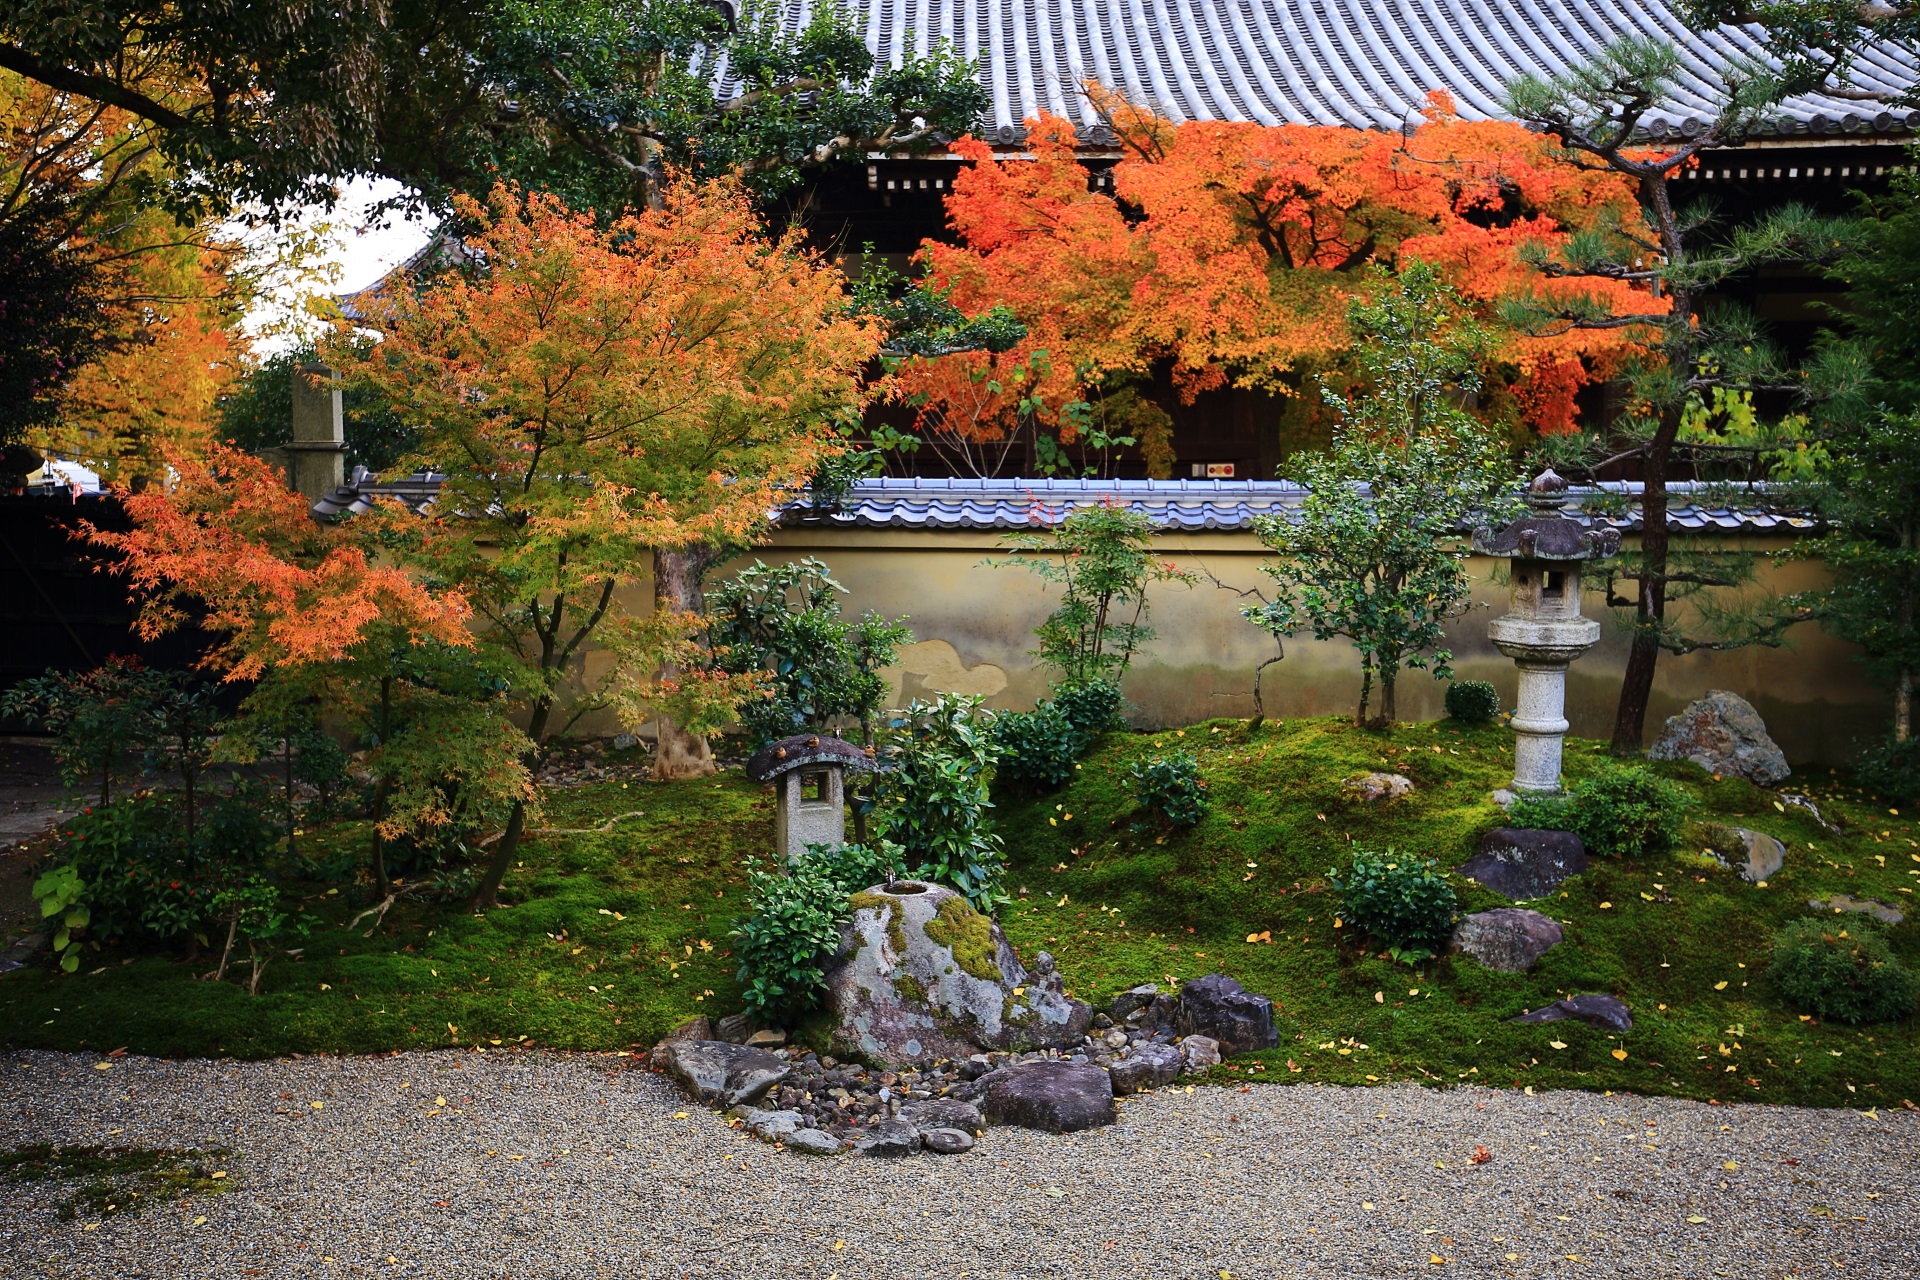 立本寺の本堂と庭園の間から溢れる鮮やかな紅葉